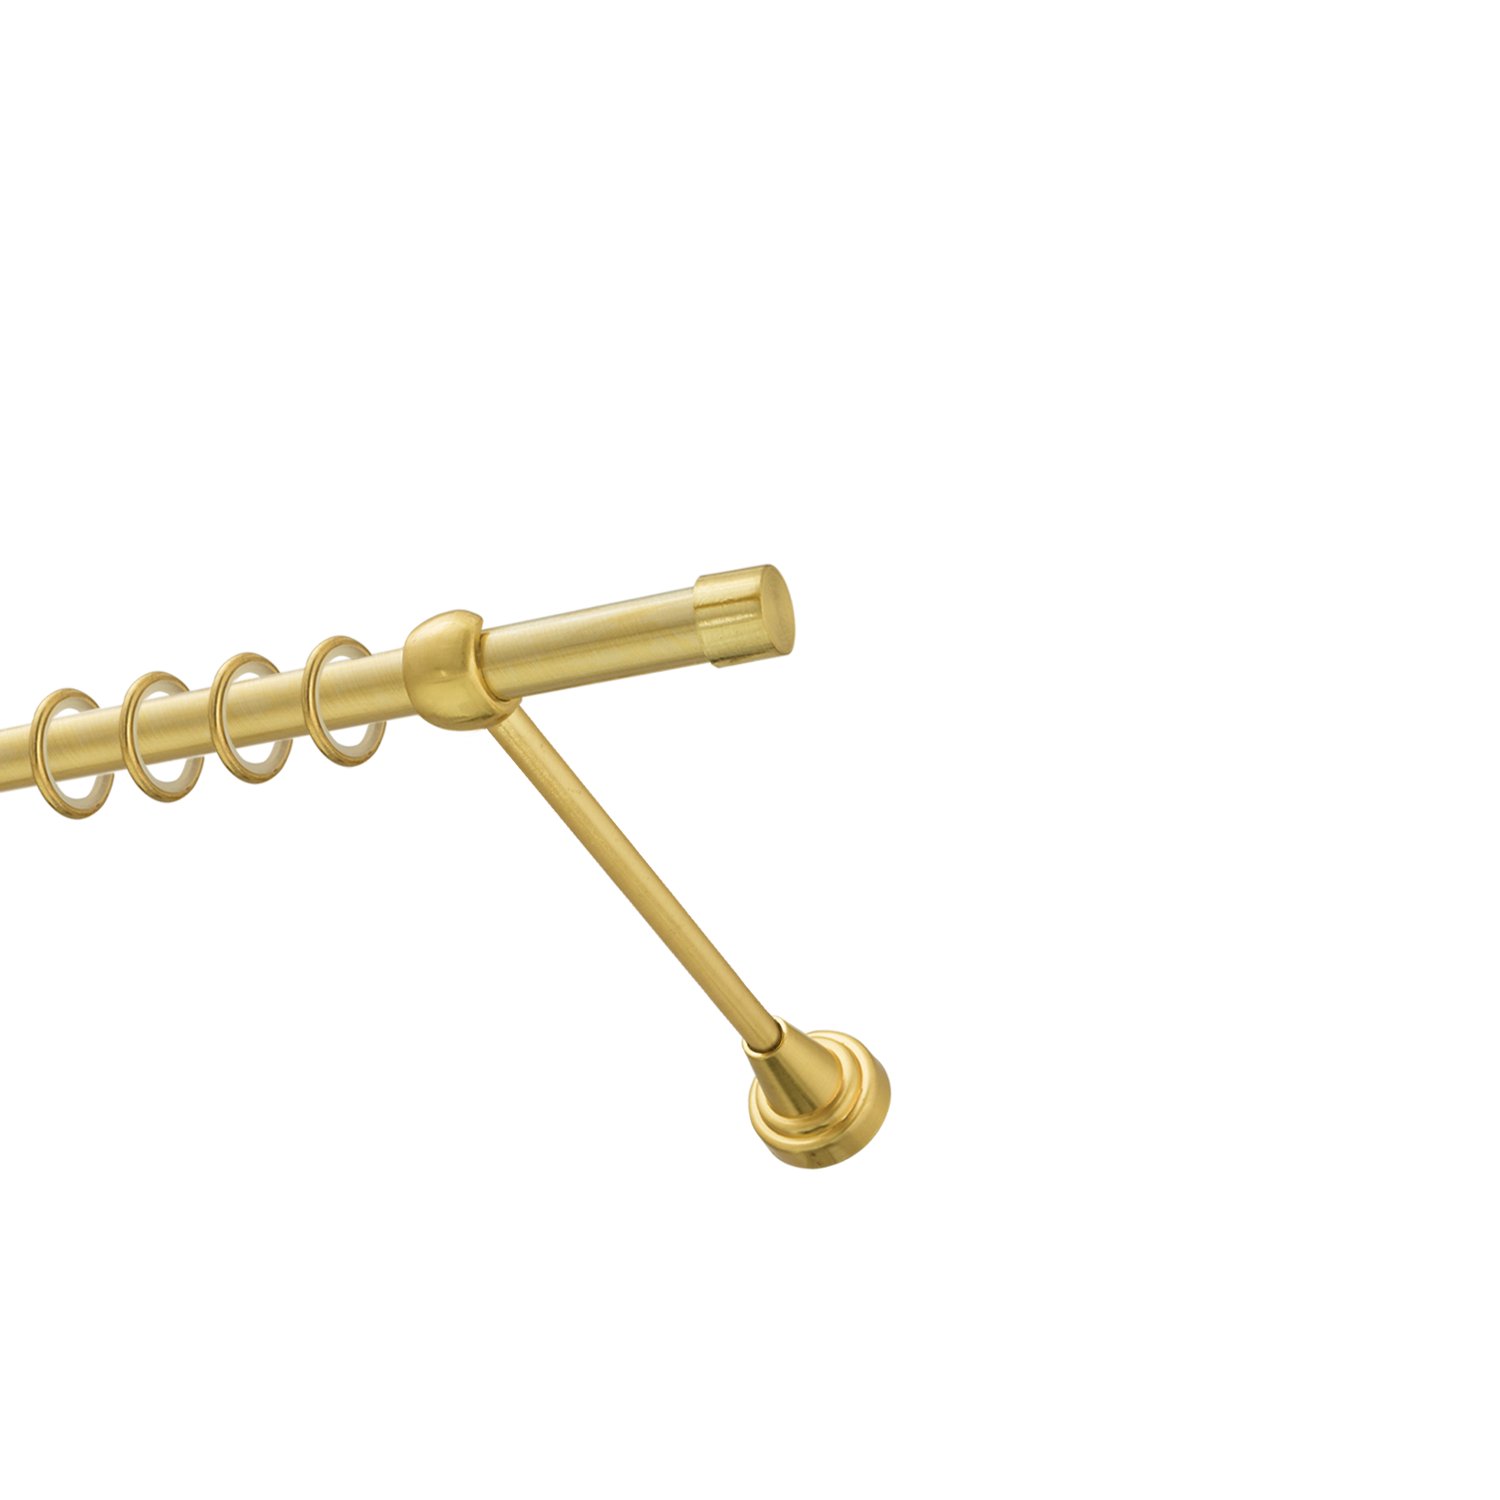 Металлический карниз для штор Заглушка, однорядный 16 мм, золото, гладкая штанга, длина 180 см - фото Wikidecor.ru